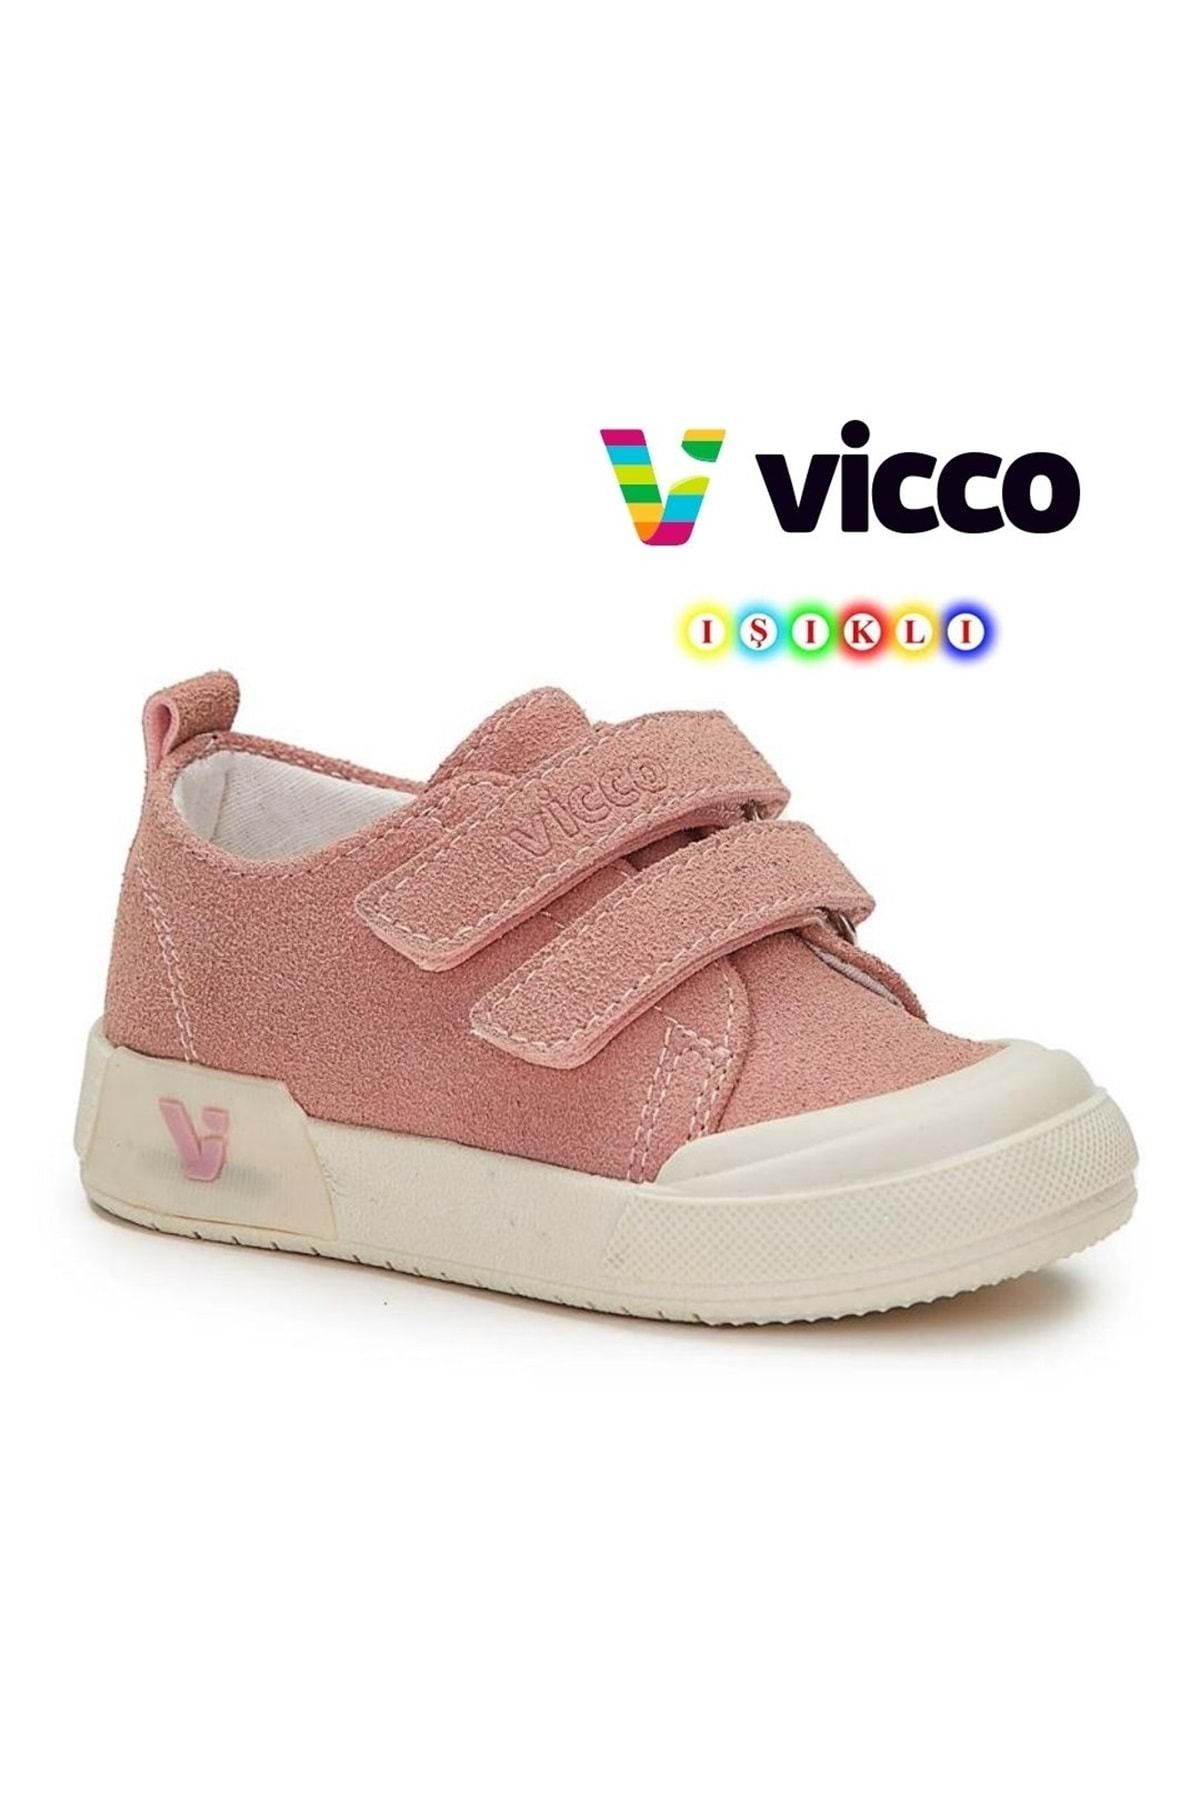 Kids Club Shoes Vicco Mago Işıklı Keten Ortopedik Çocuk Spor Ayakkabı PUDRA